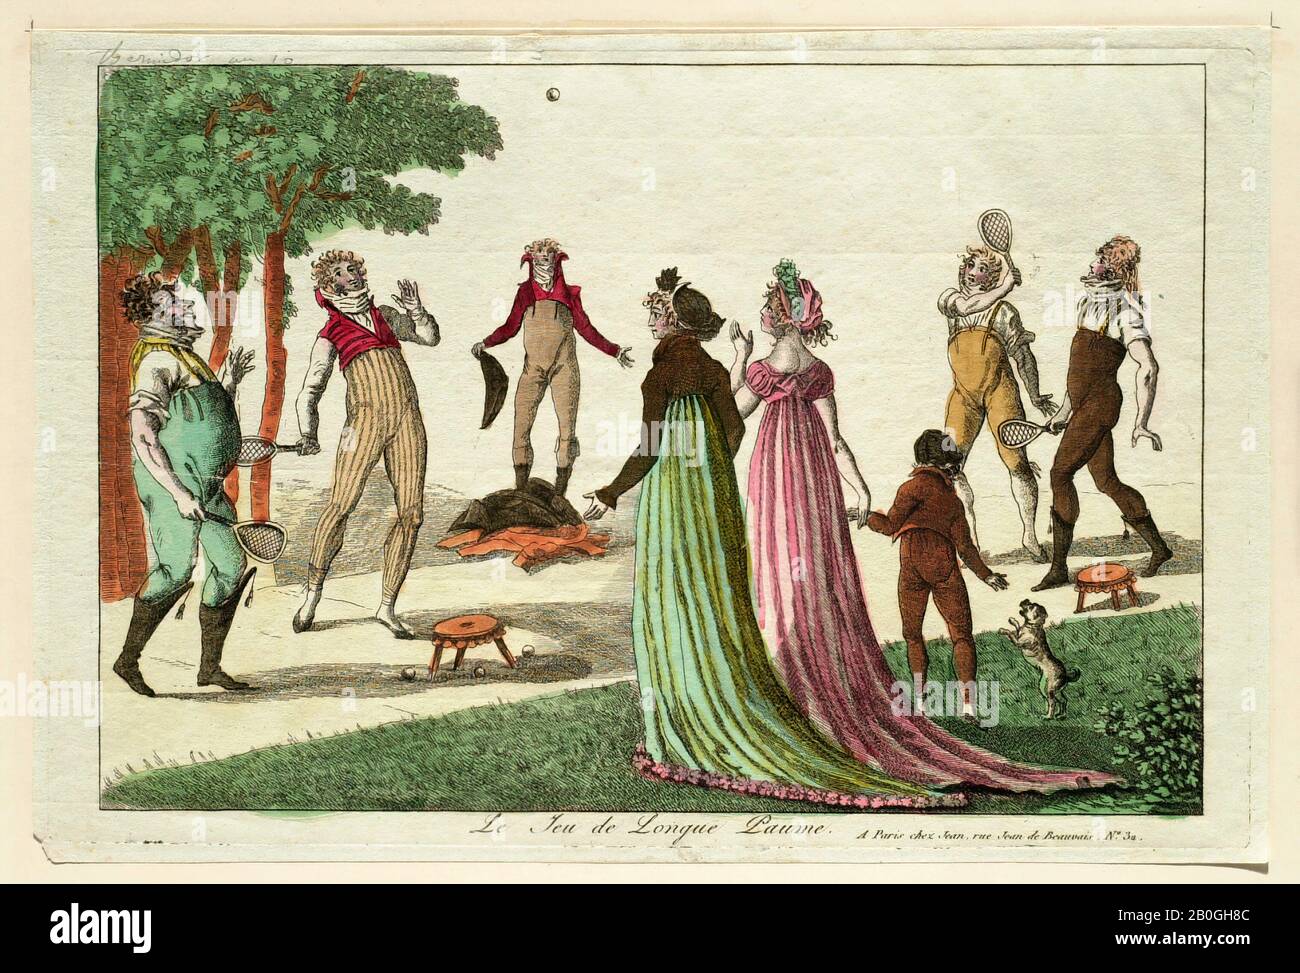 Inconnu, le jeu de longue plume, 1802, gravure De couleur Manuelle sur papier, Total : 7 11/16 x 11 7/16 po. (19,6 x 29 cm Banque D'Images